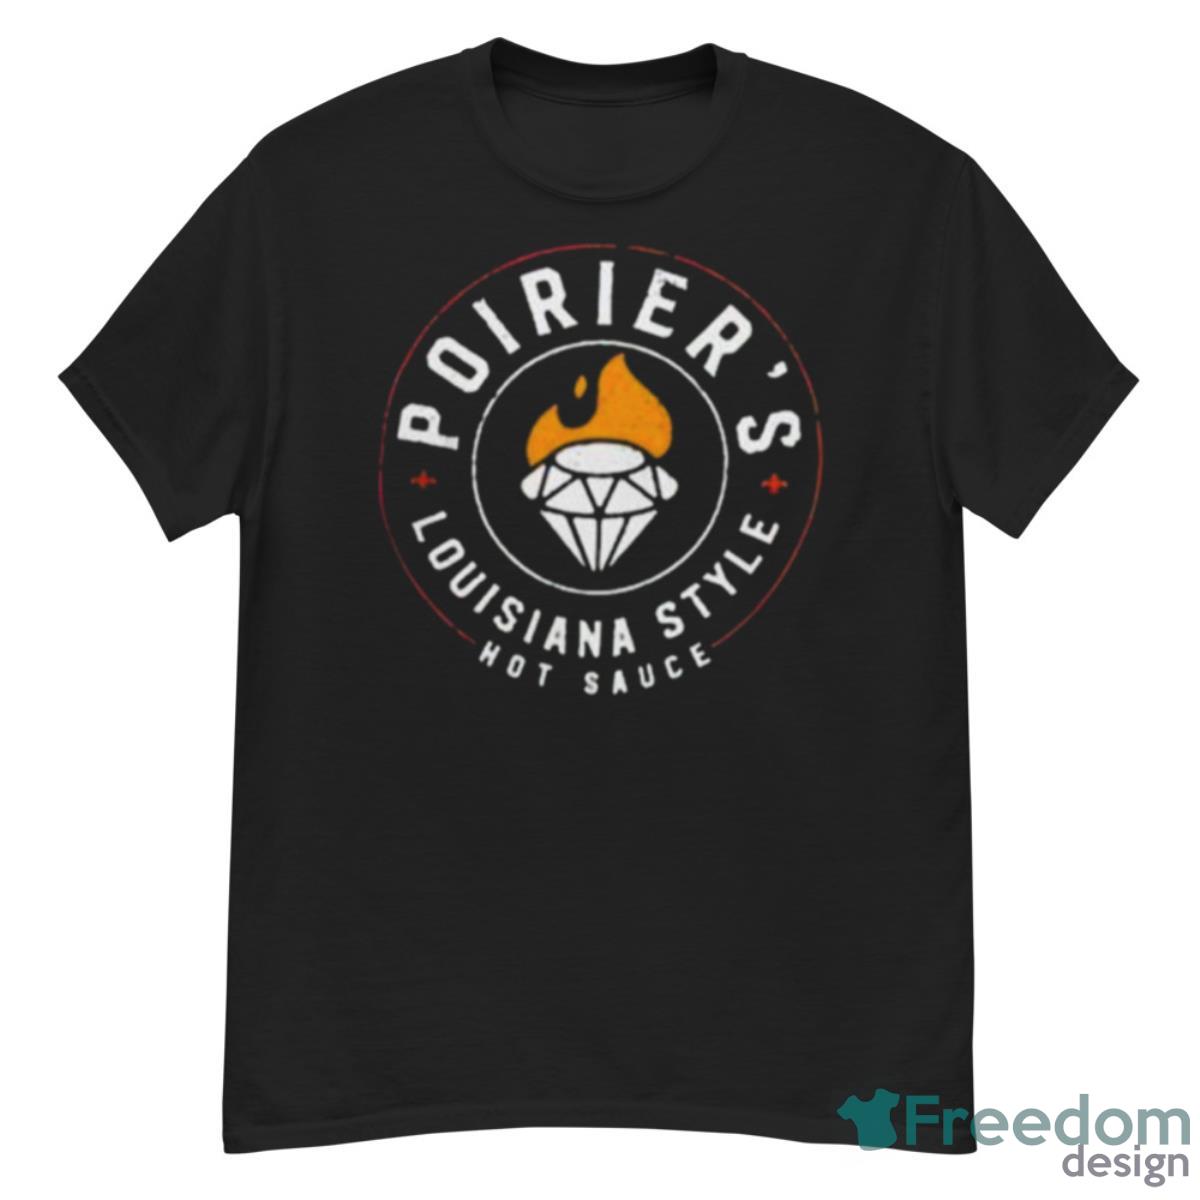 Dustin Poirier Louisiana Style Hot Sauce Shirt - Freedomdesign